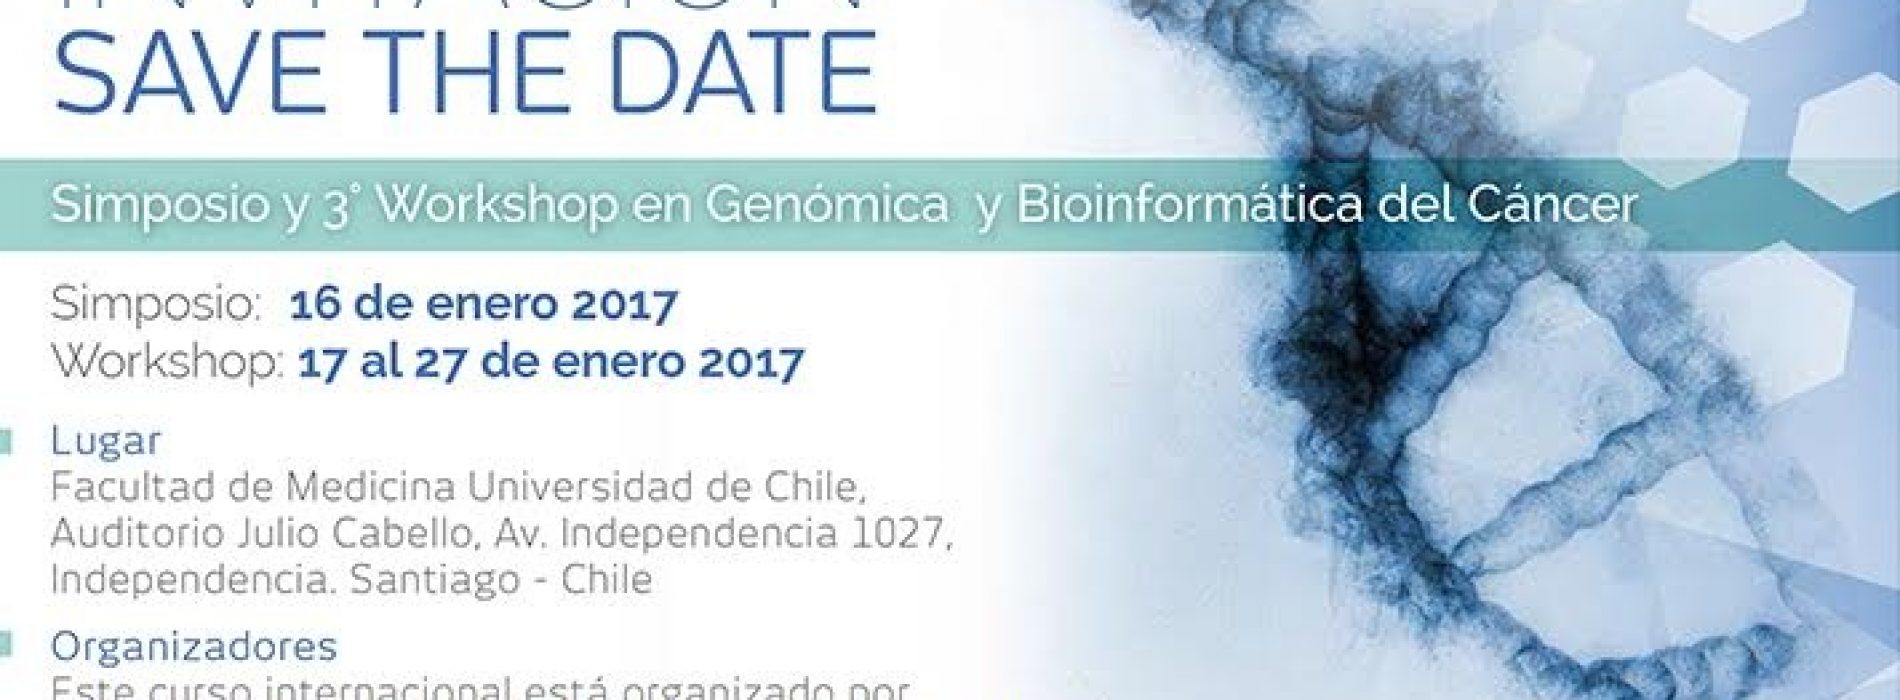 Simposio y Workshop en Genómica y Bioinformática del Cáncer